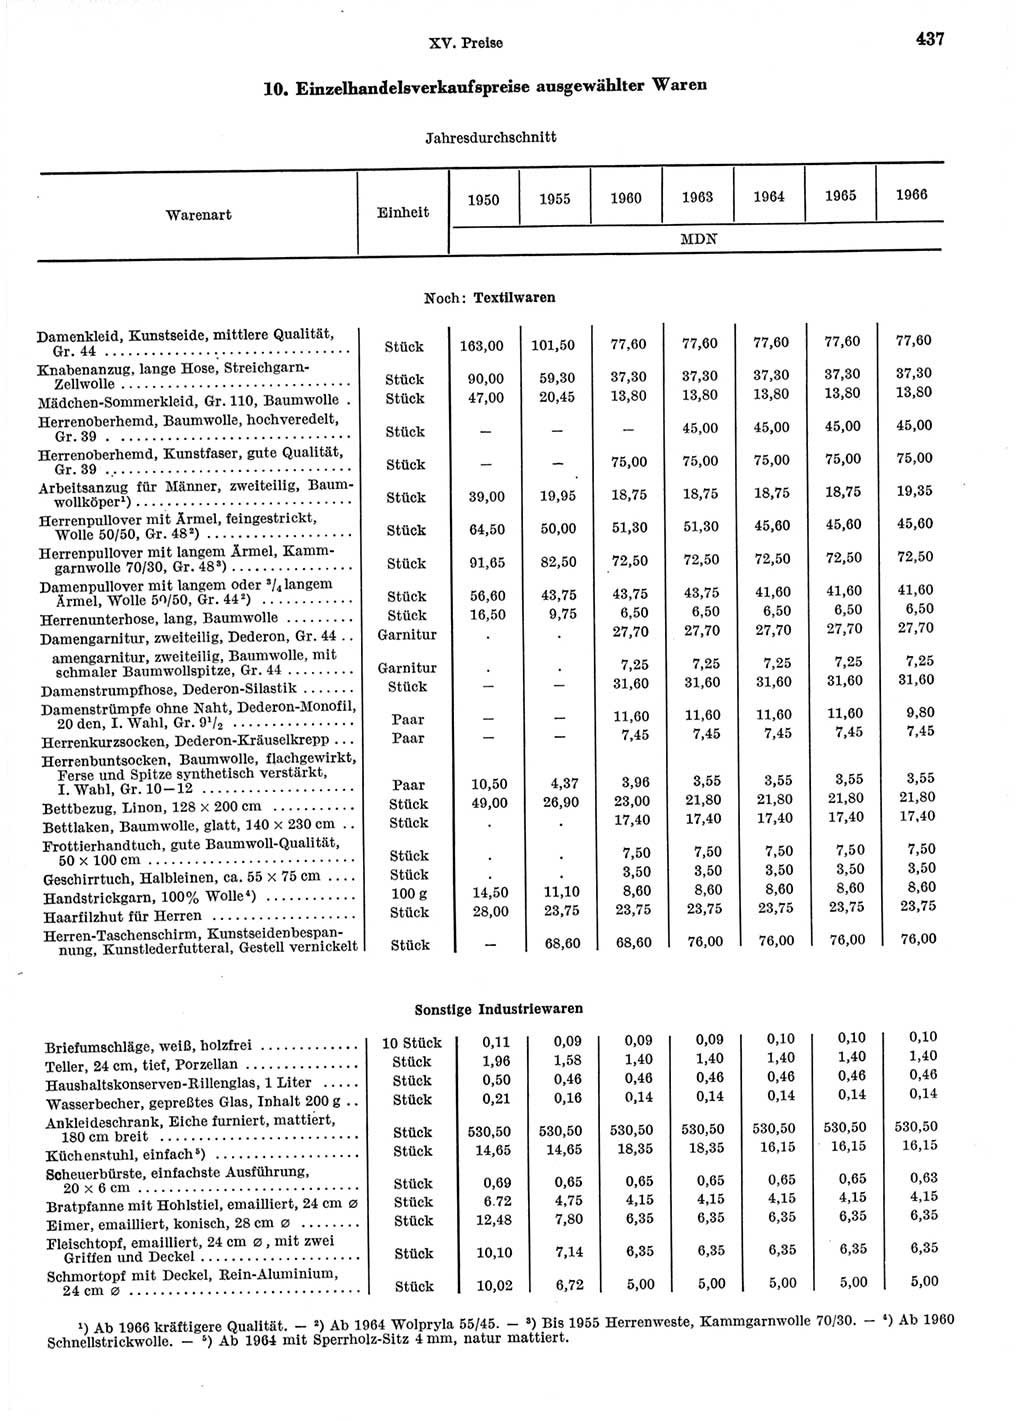 Statistisches Jahrbuch der Deutschen Demokratischen Republik (DDR) 1967, Seite 437 (Stat. Jb. DDR 1967, S. 437)